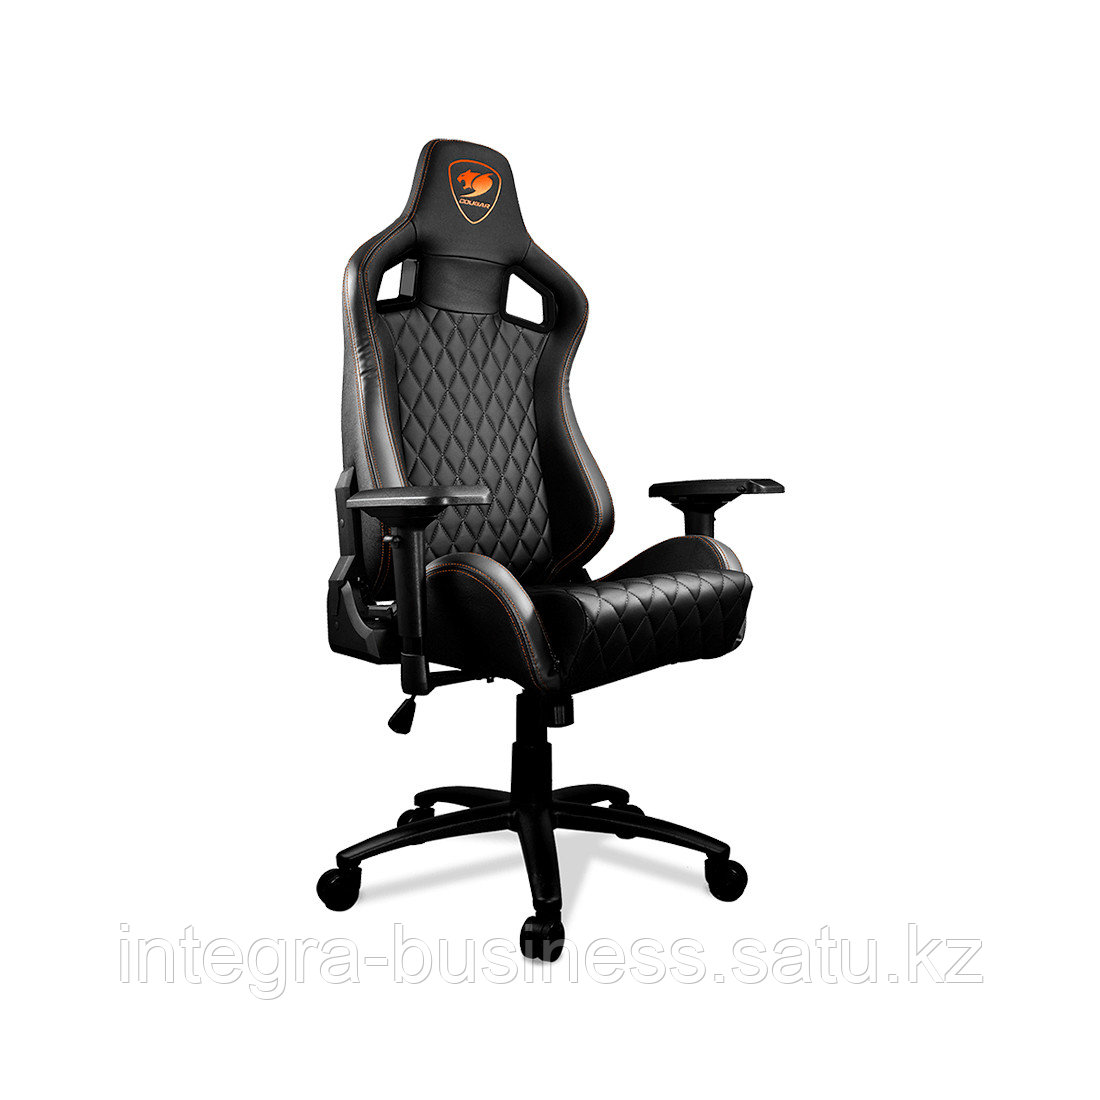 Игровое компьютерное кресло Cougar ARMOR-S Black, фото 1